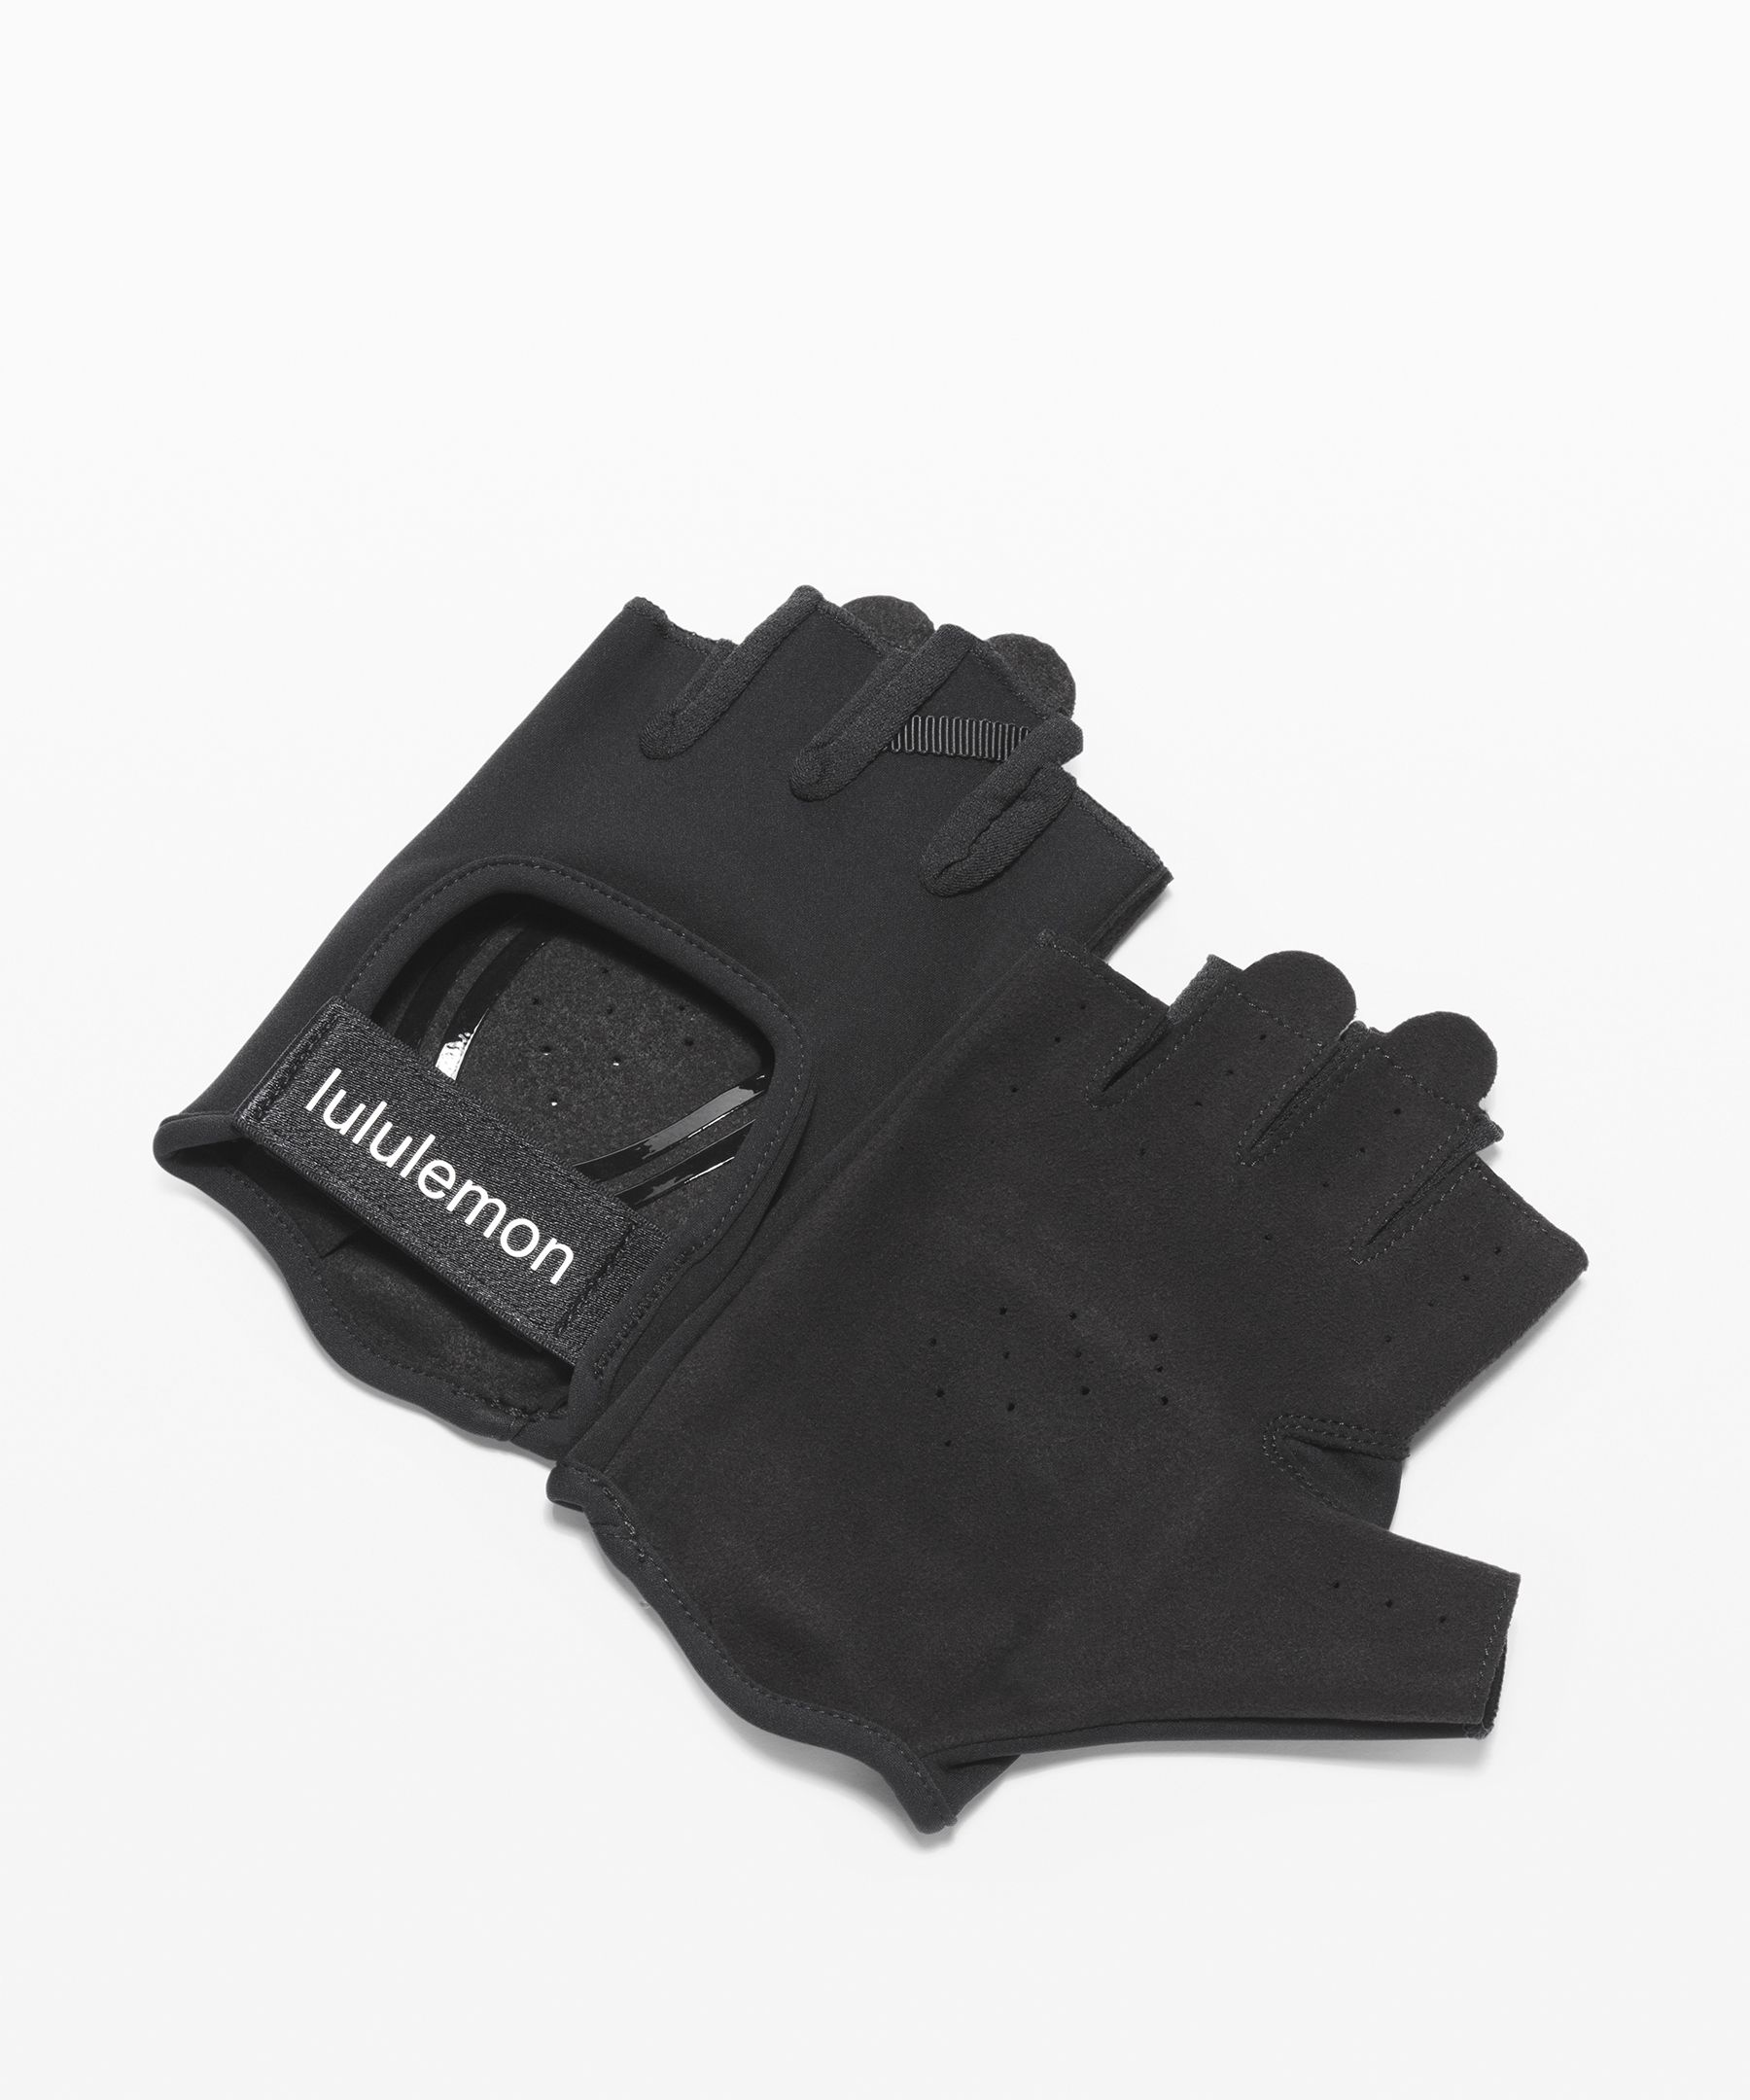 Lululemon Uplift Training Gloves In Black